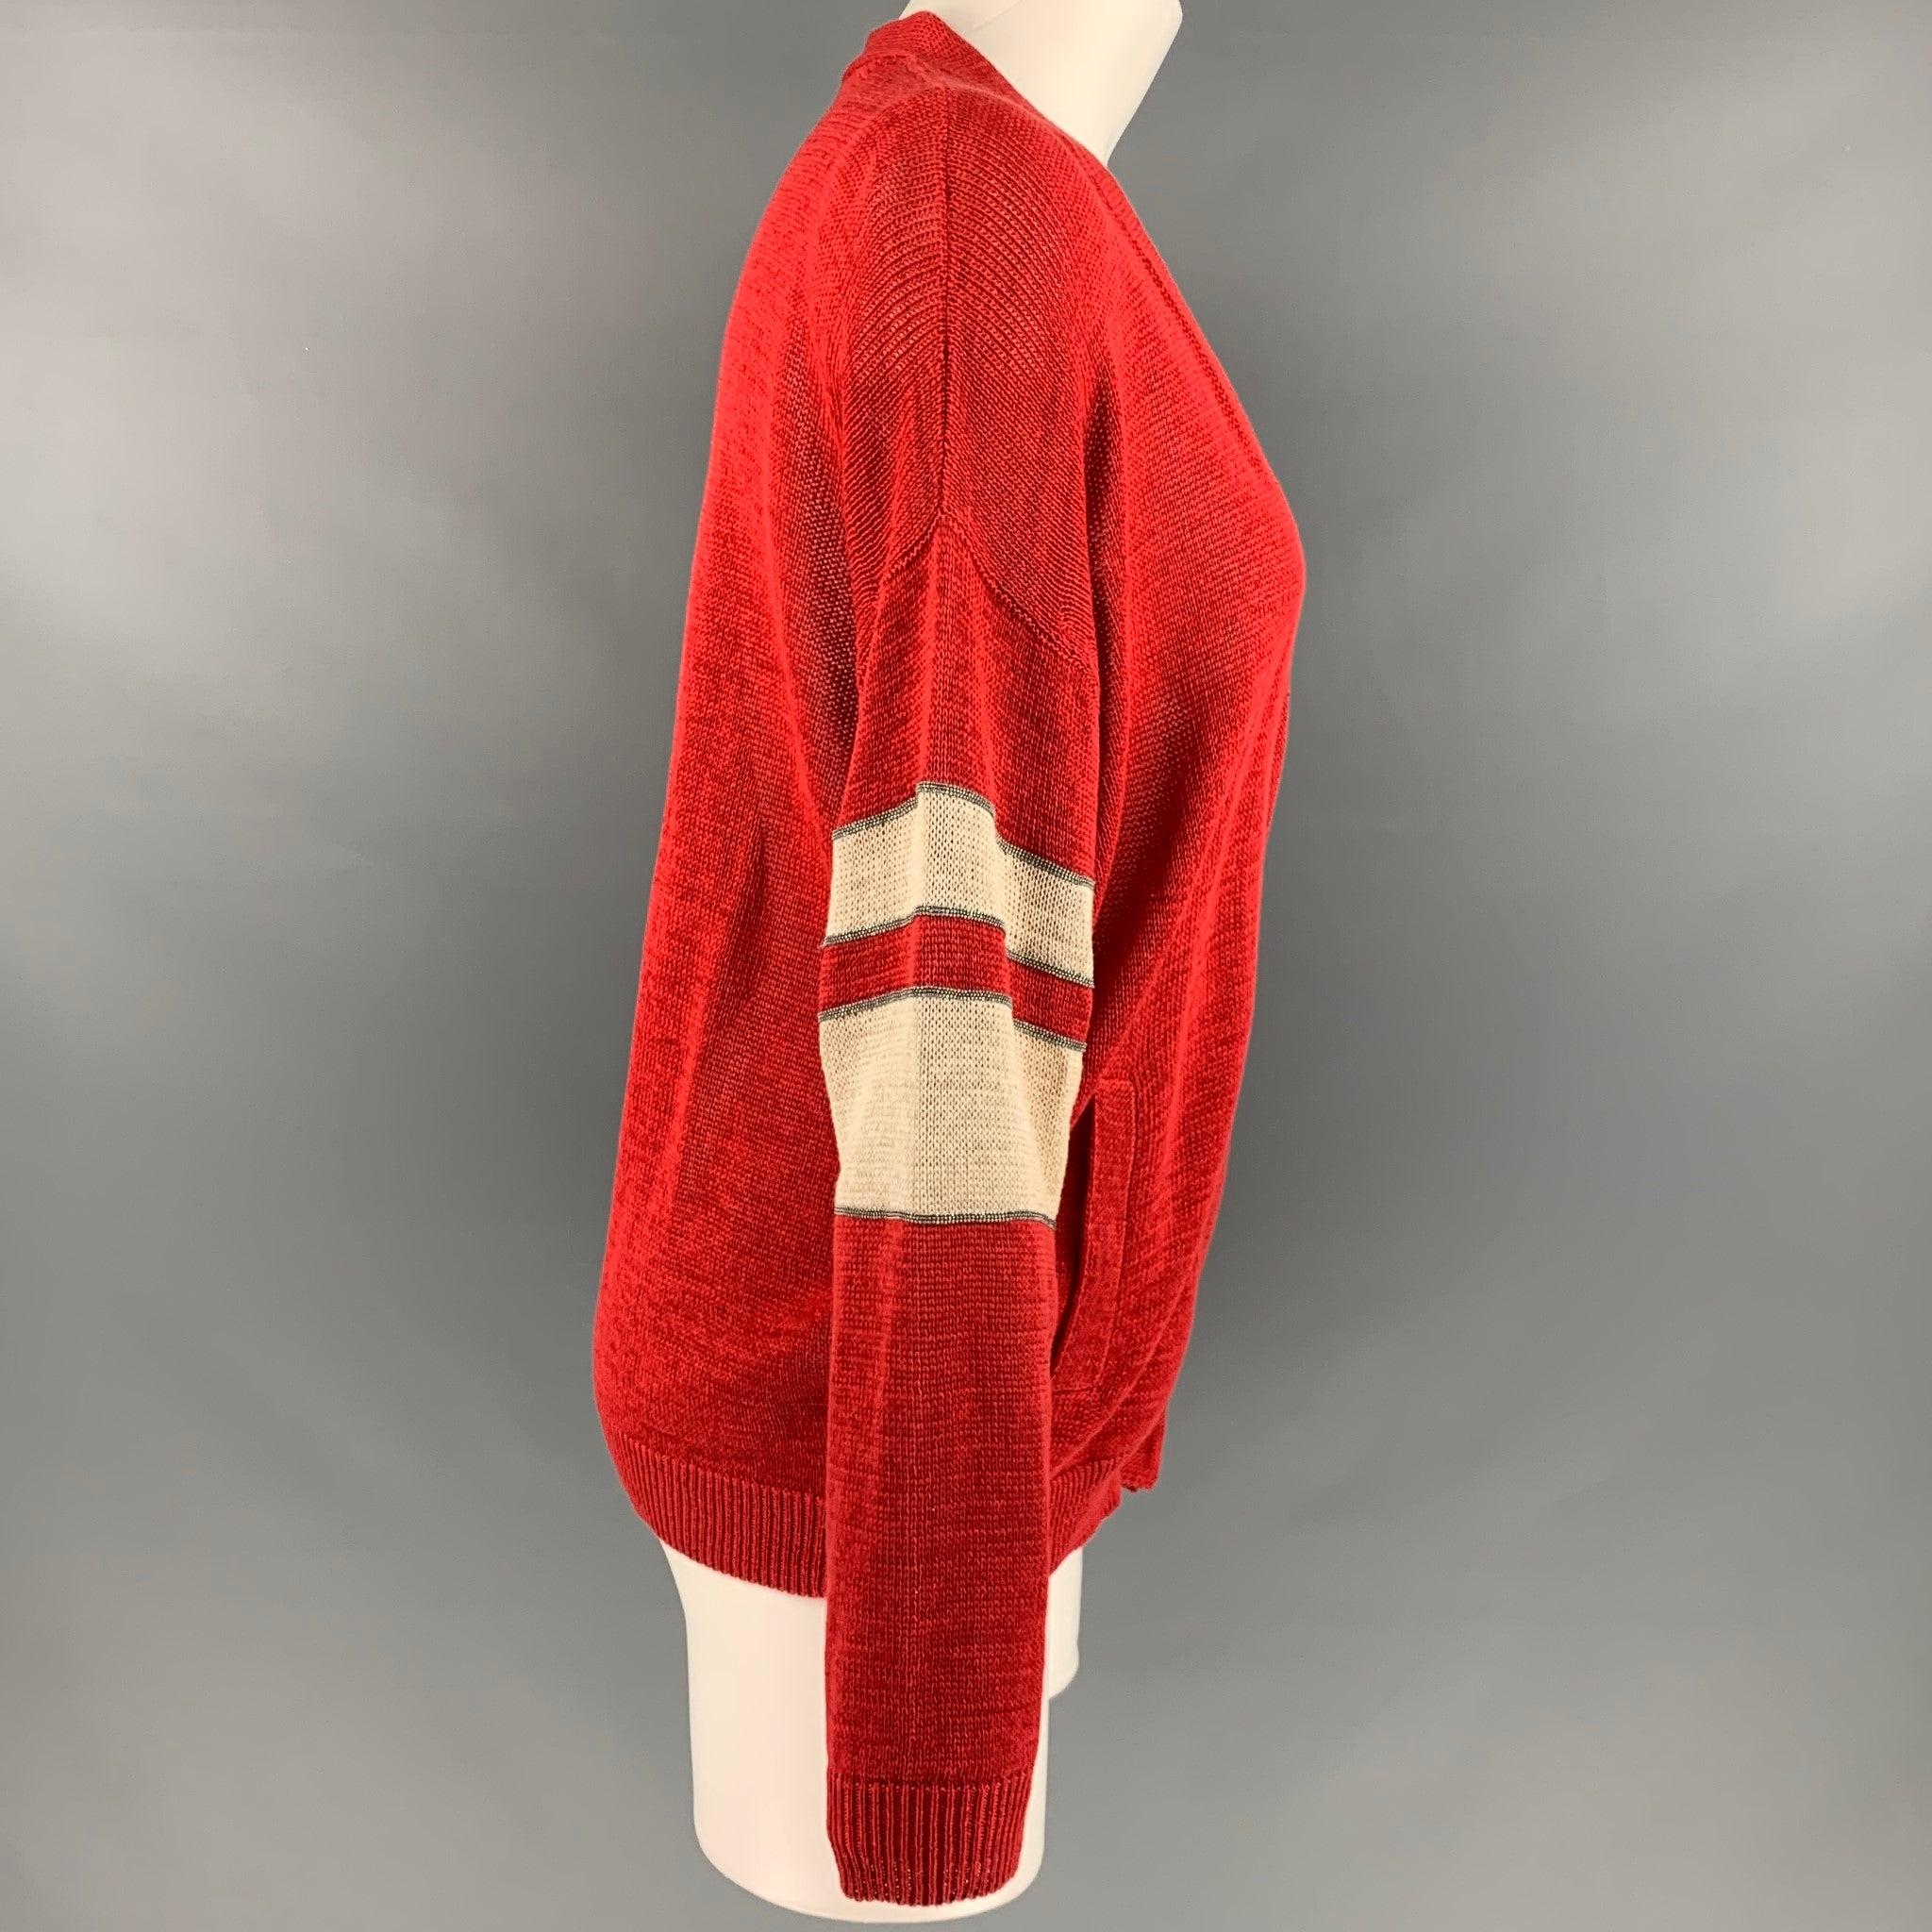 BRUNELLO CUCINELLI
cardigan en tricot de coton rouge et blanc, avec les perles Monili emblématiques, des détails à rayures, une coupe surdimensionnée et une fermeture à boutons-pression cachés. Fabriquées en Italie. Très bon état d'origine. Signes